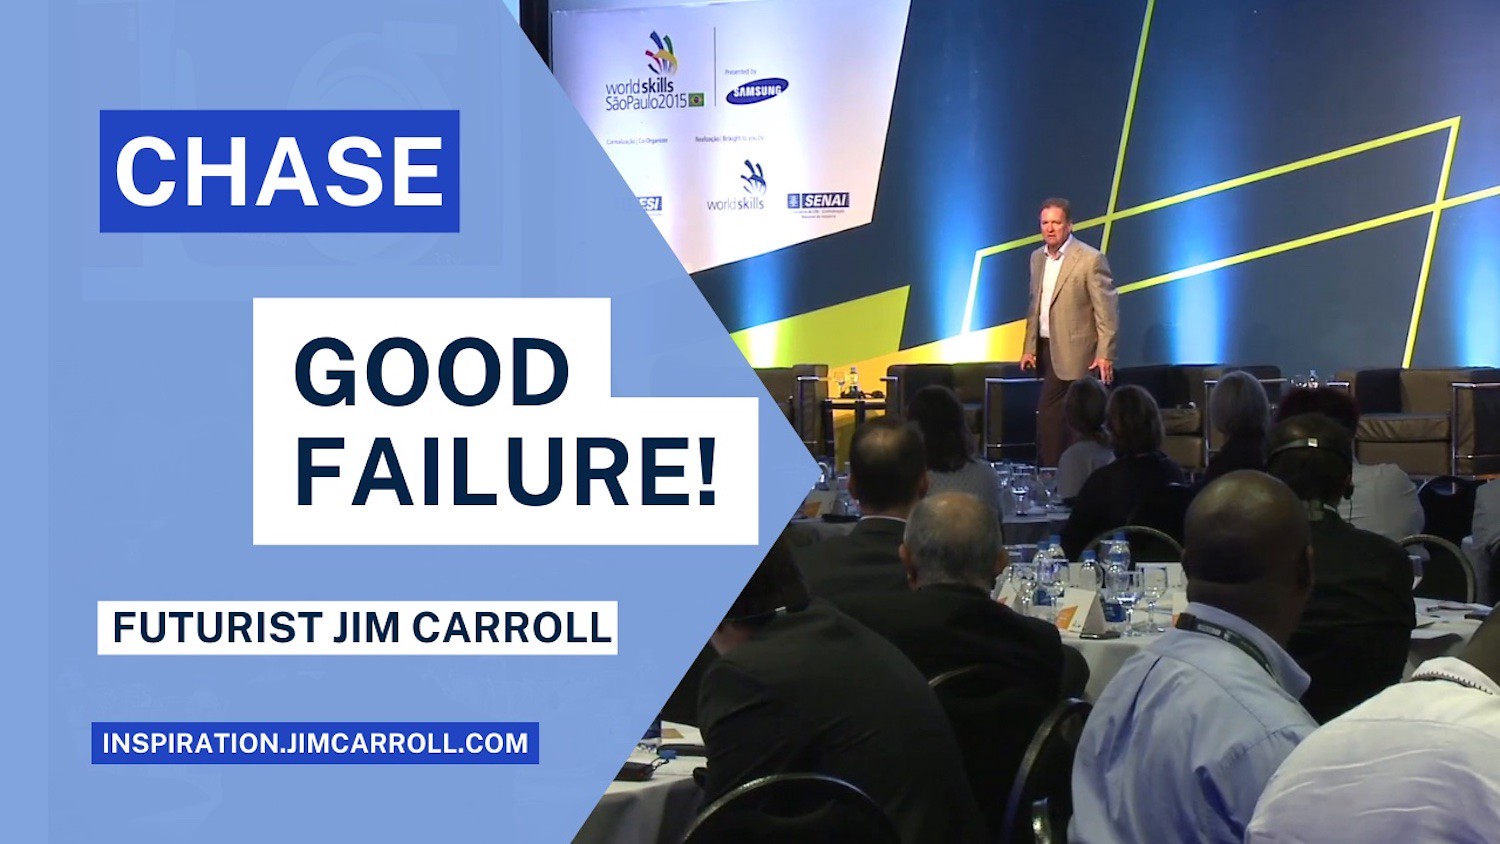 "Chase good failure!" - Futurist Jim Carroll